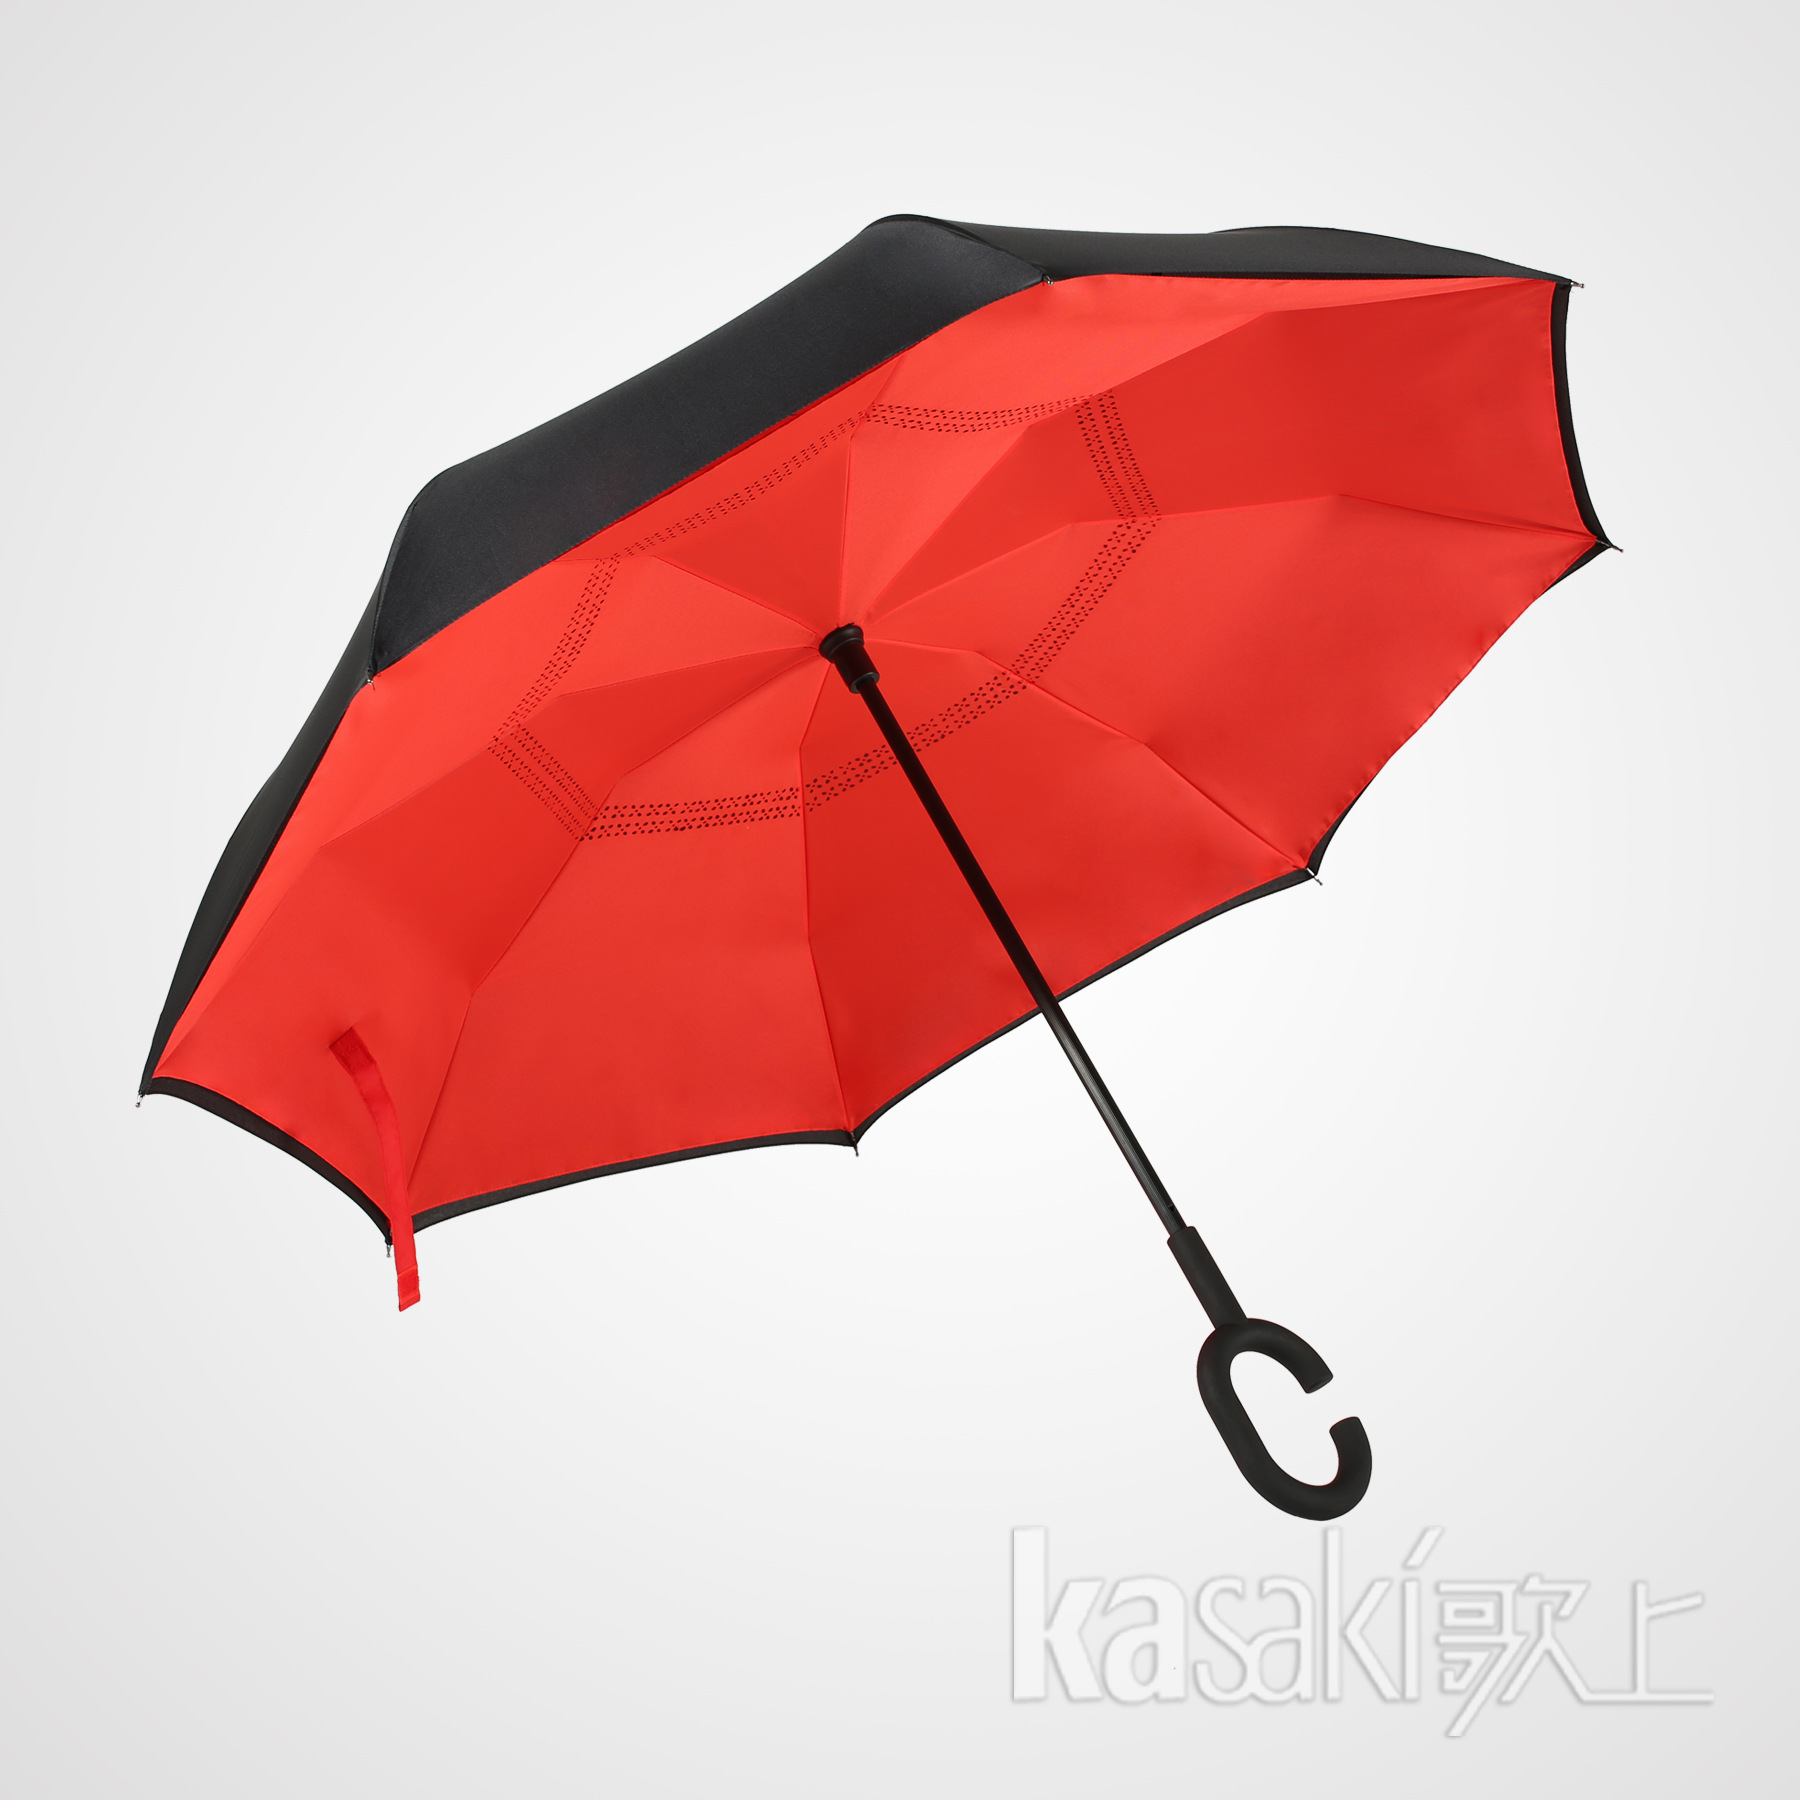 晴雨伞的价格可以决定它的品质吗